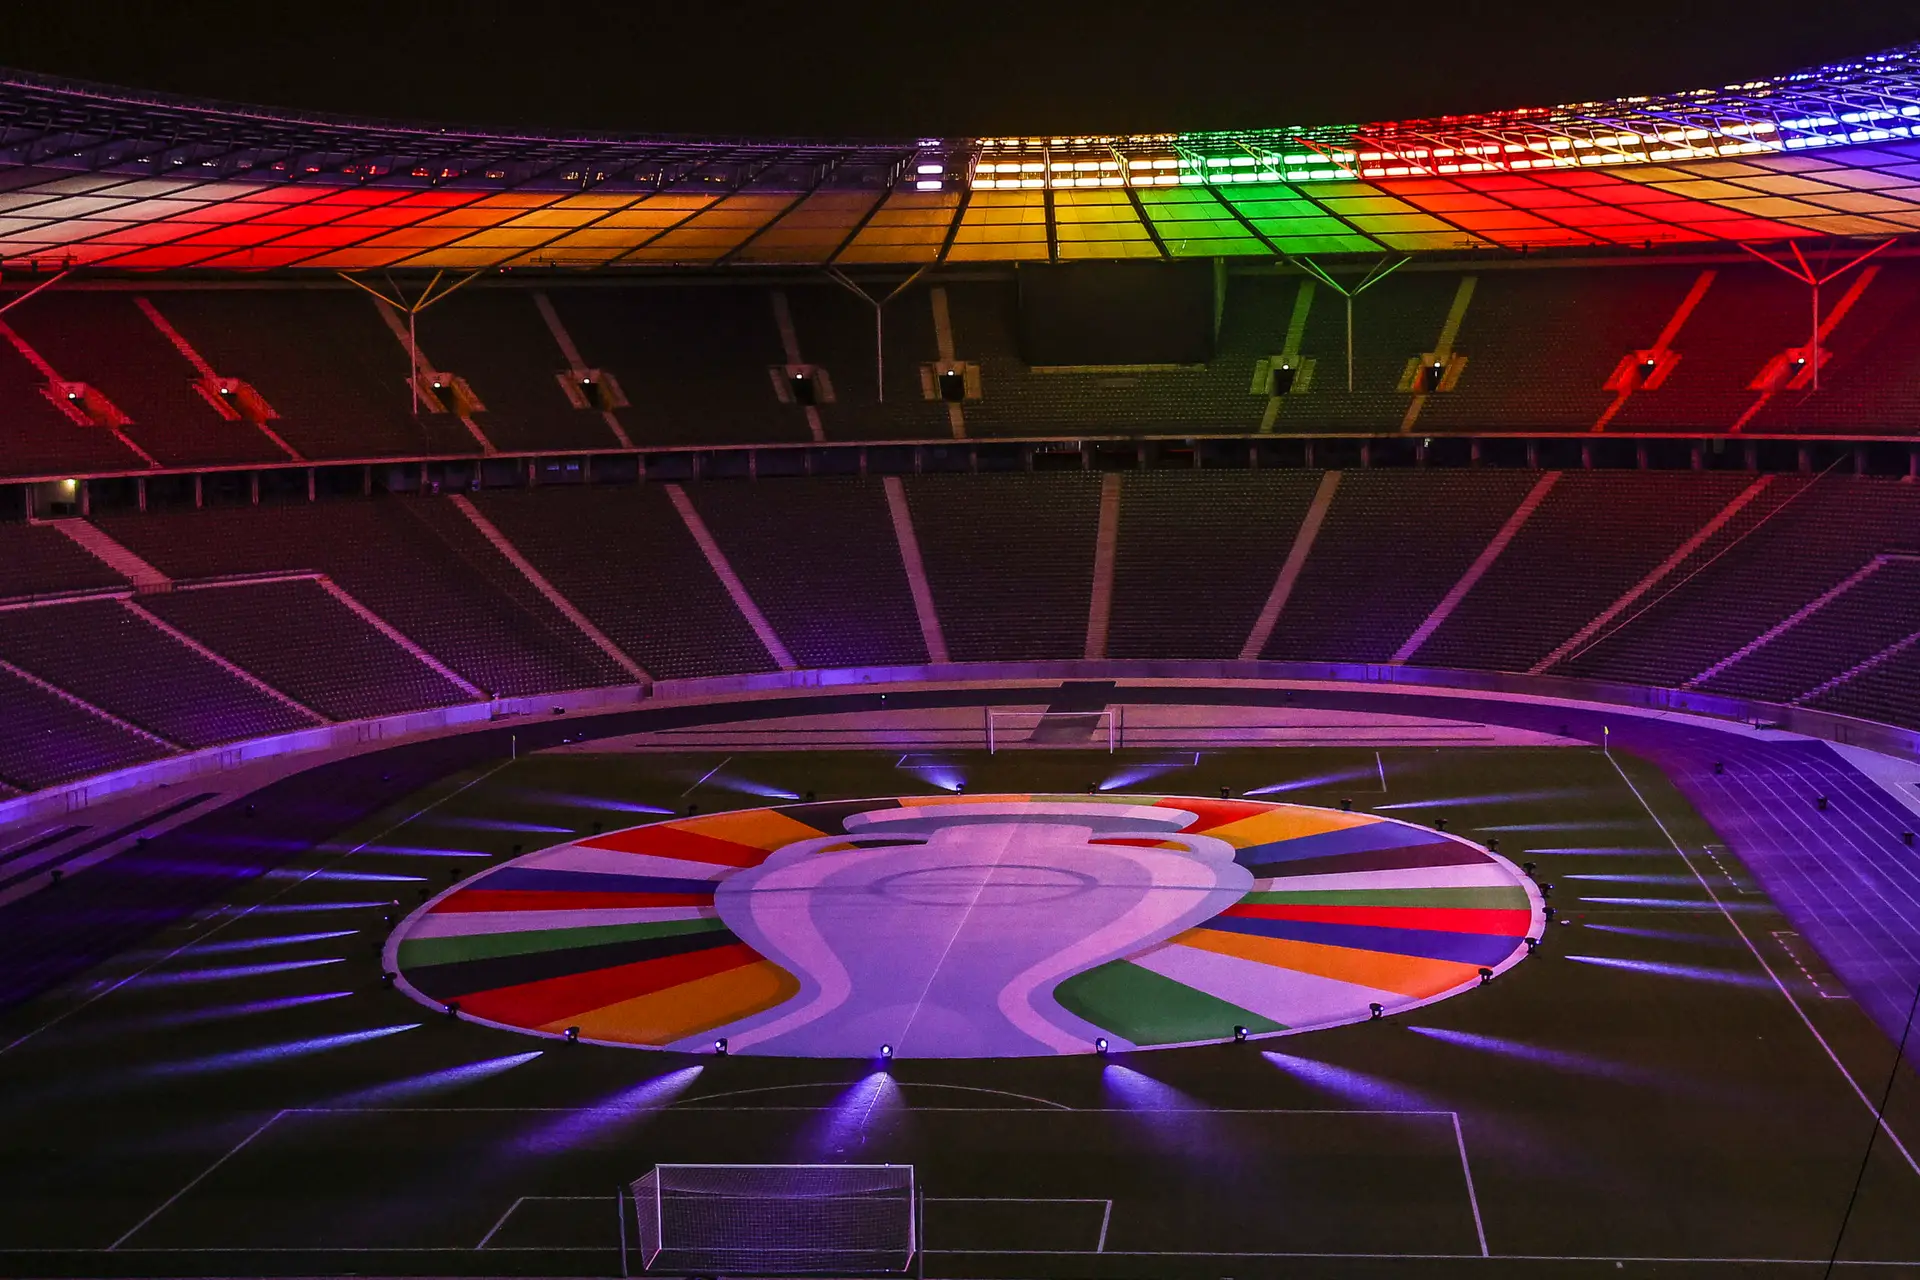 Euro'2024: Alemanha e Escócia disputam jogo inaugural em Munique